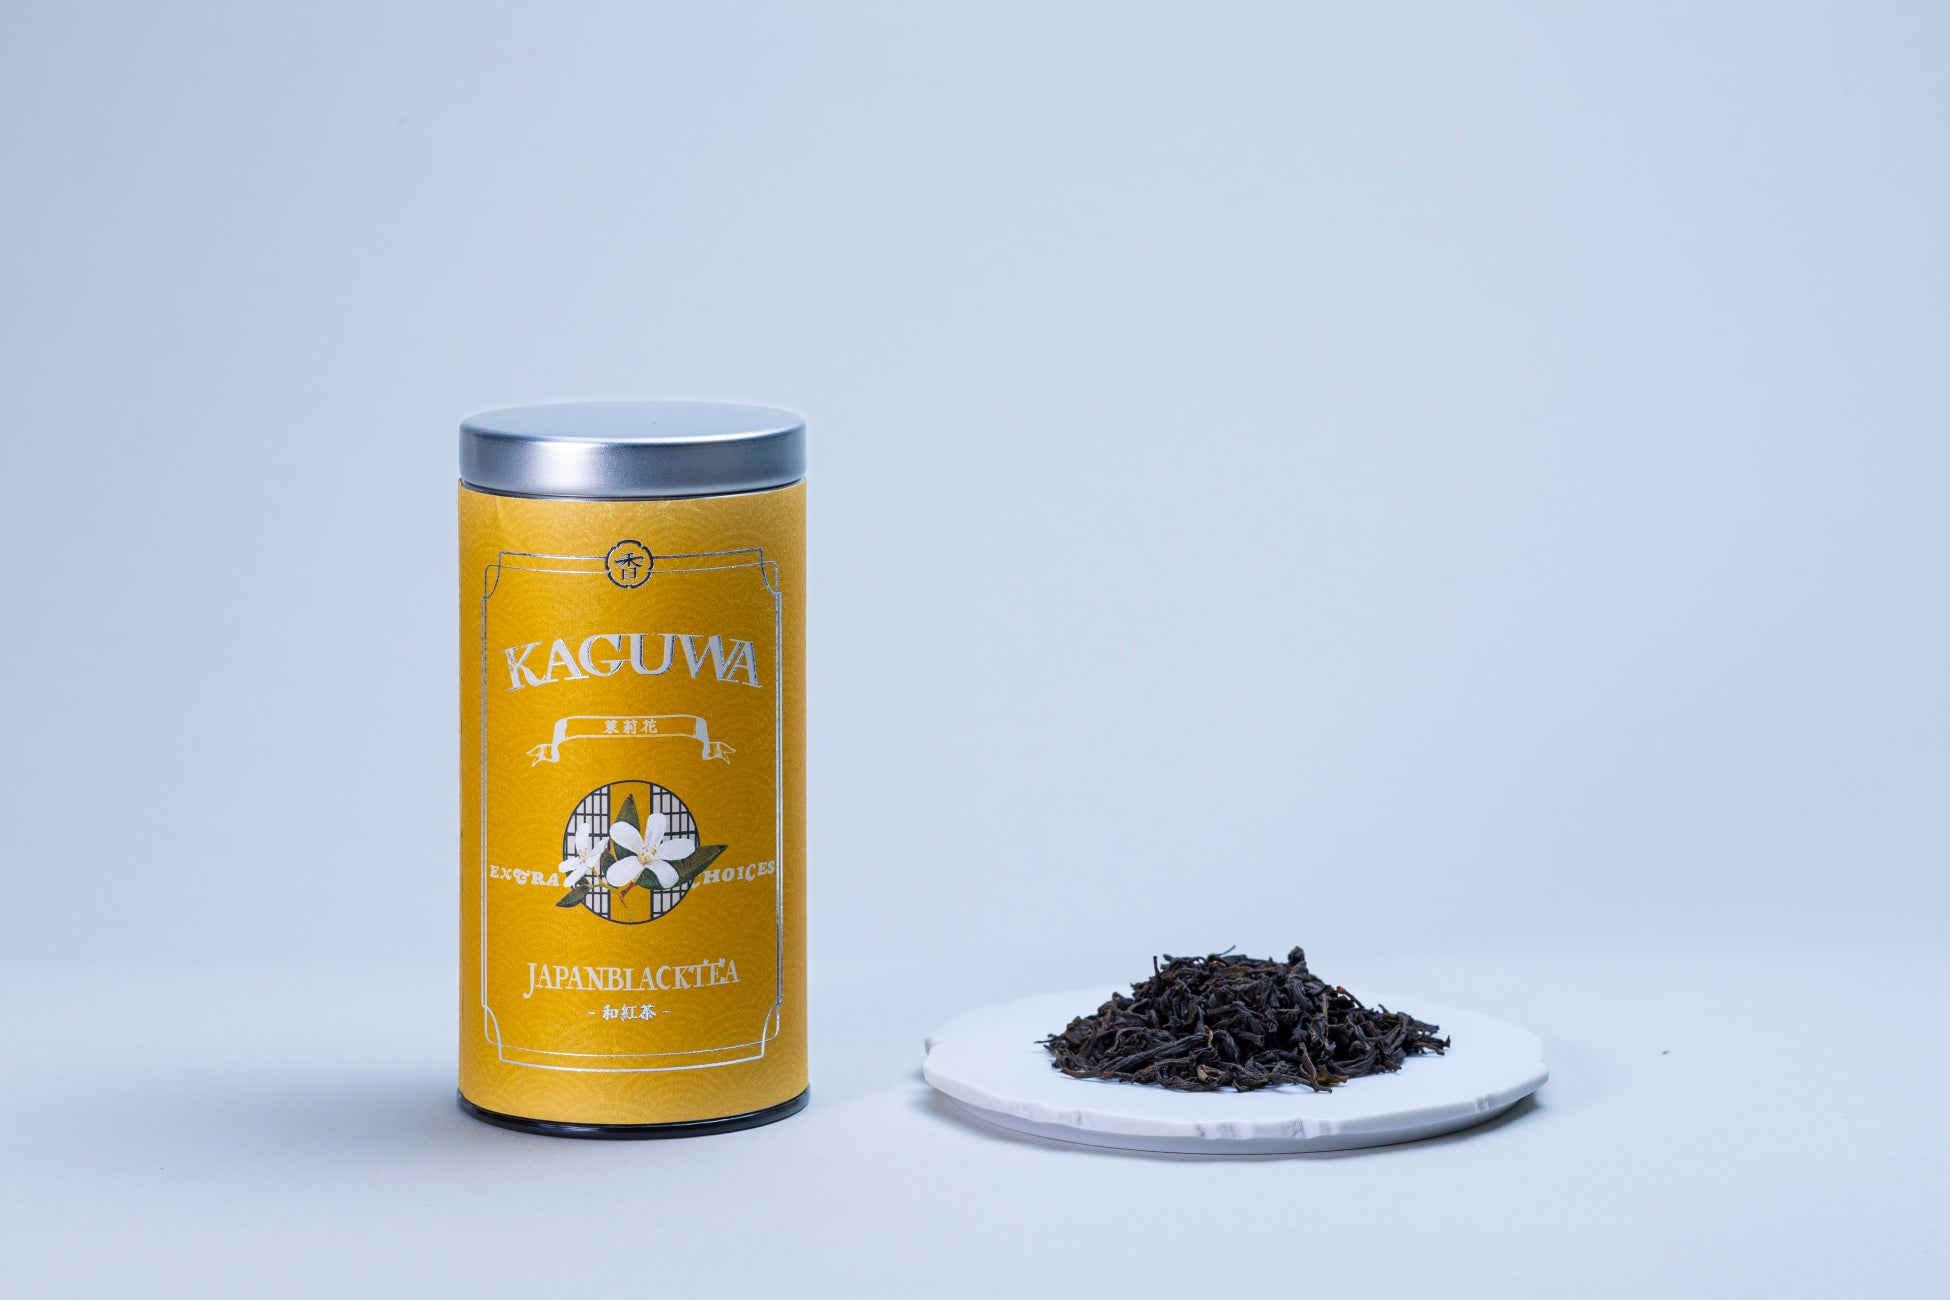 【日本発】茶葉本来の自然の香りを楽しむ和紅茶ブランド「KAGUWA」4/1リリース